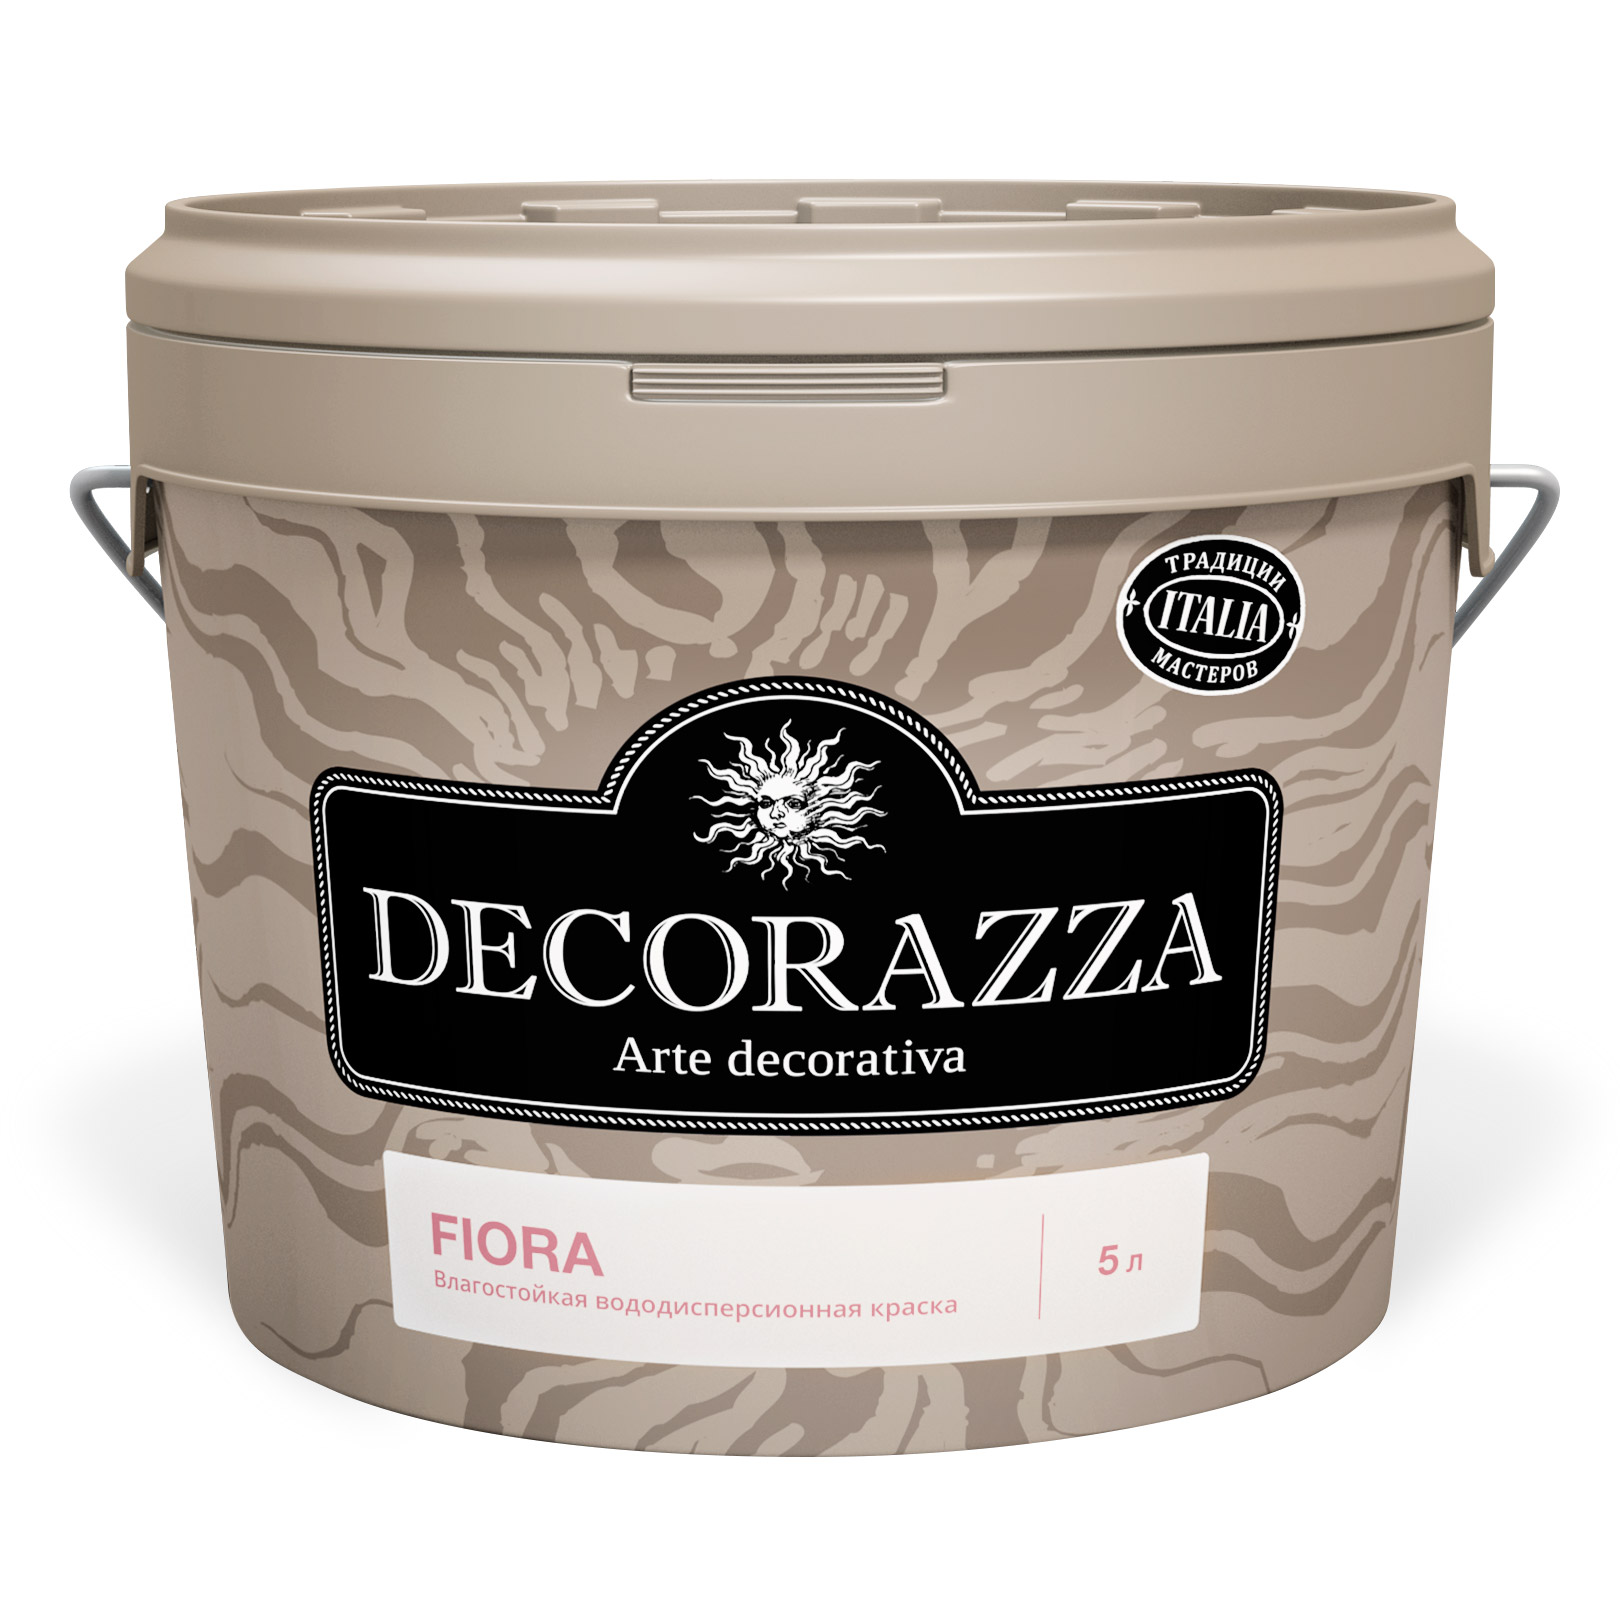 Краска Decorazza Fiora база A вододисперсионная с высокой эксплуатационной нагрузкой 2.7 кг (DFA-038/027) краска decorazza декор lucetezza база argento 5 кг dlc001 5